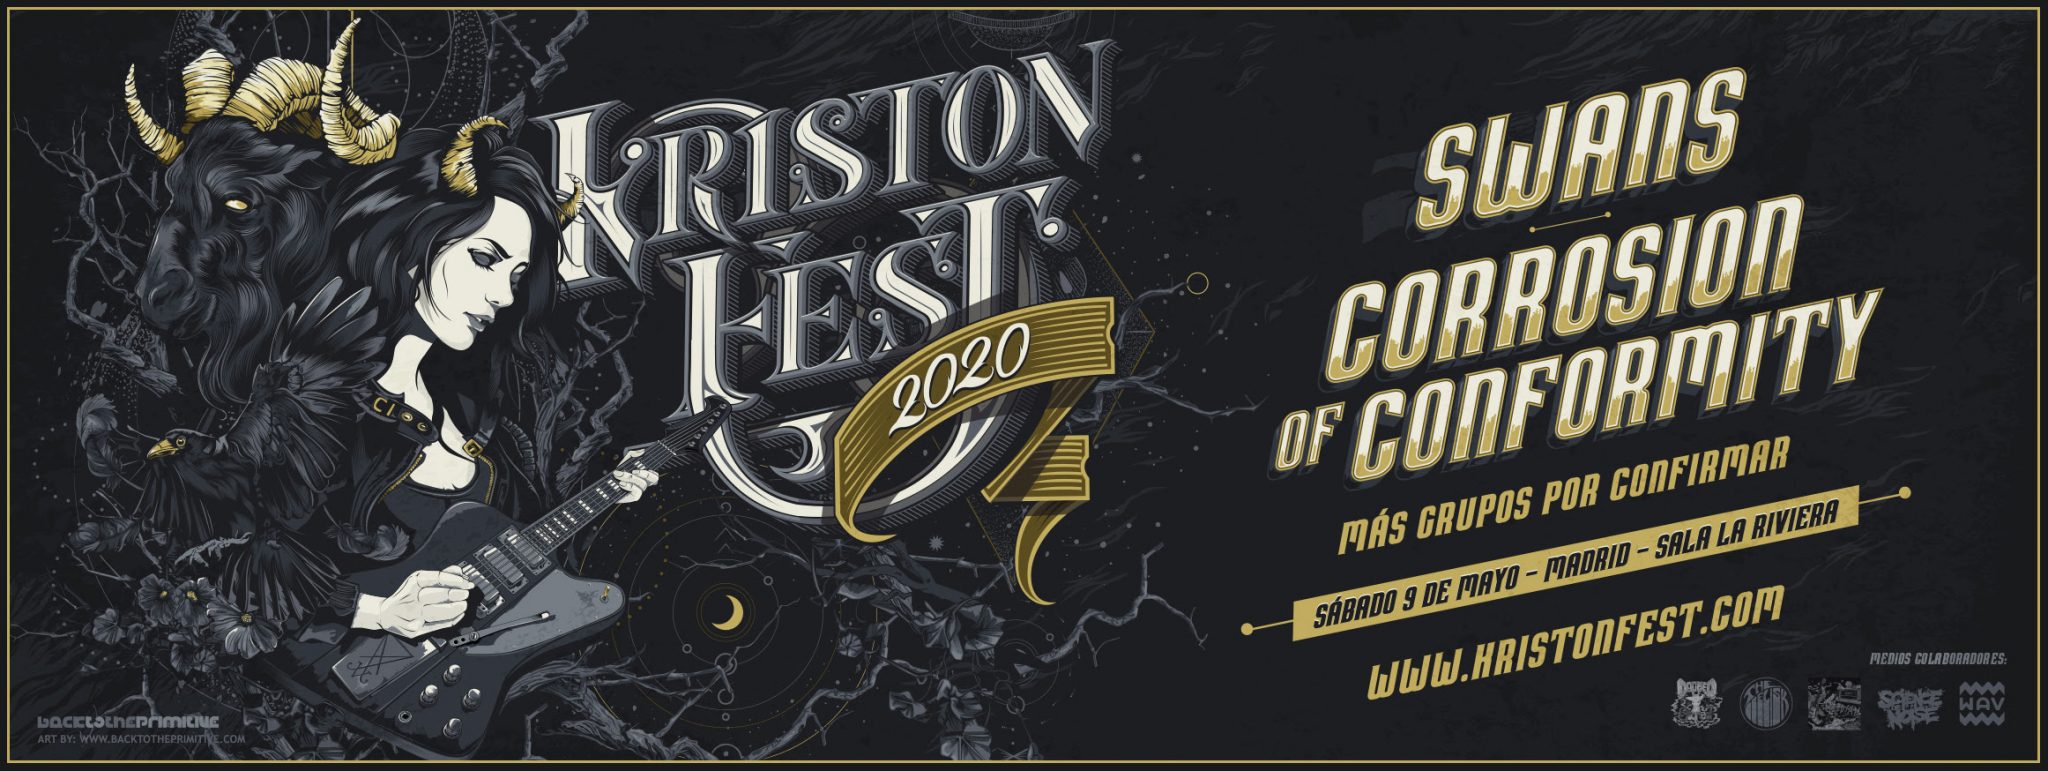 KRISTONFEST 2020 cierra su cartel con nuevas confirmaciones